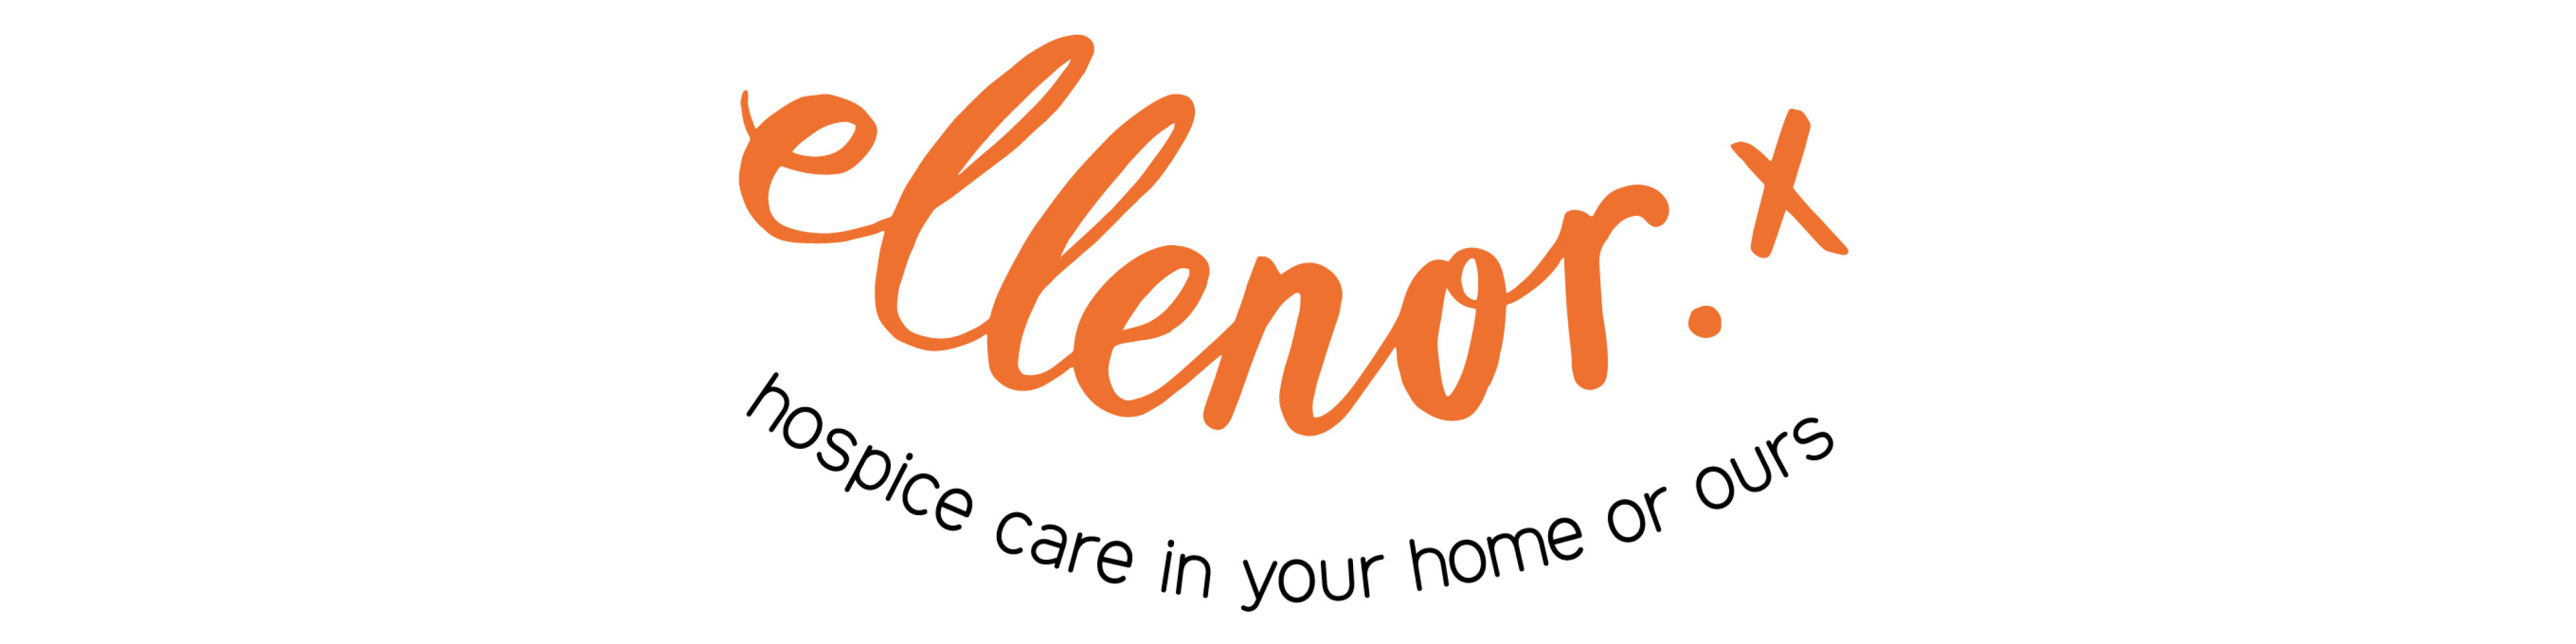 Ellenor Logo Banner